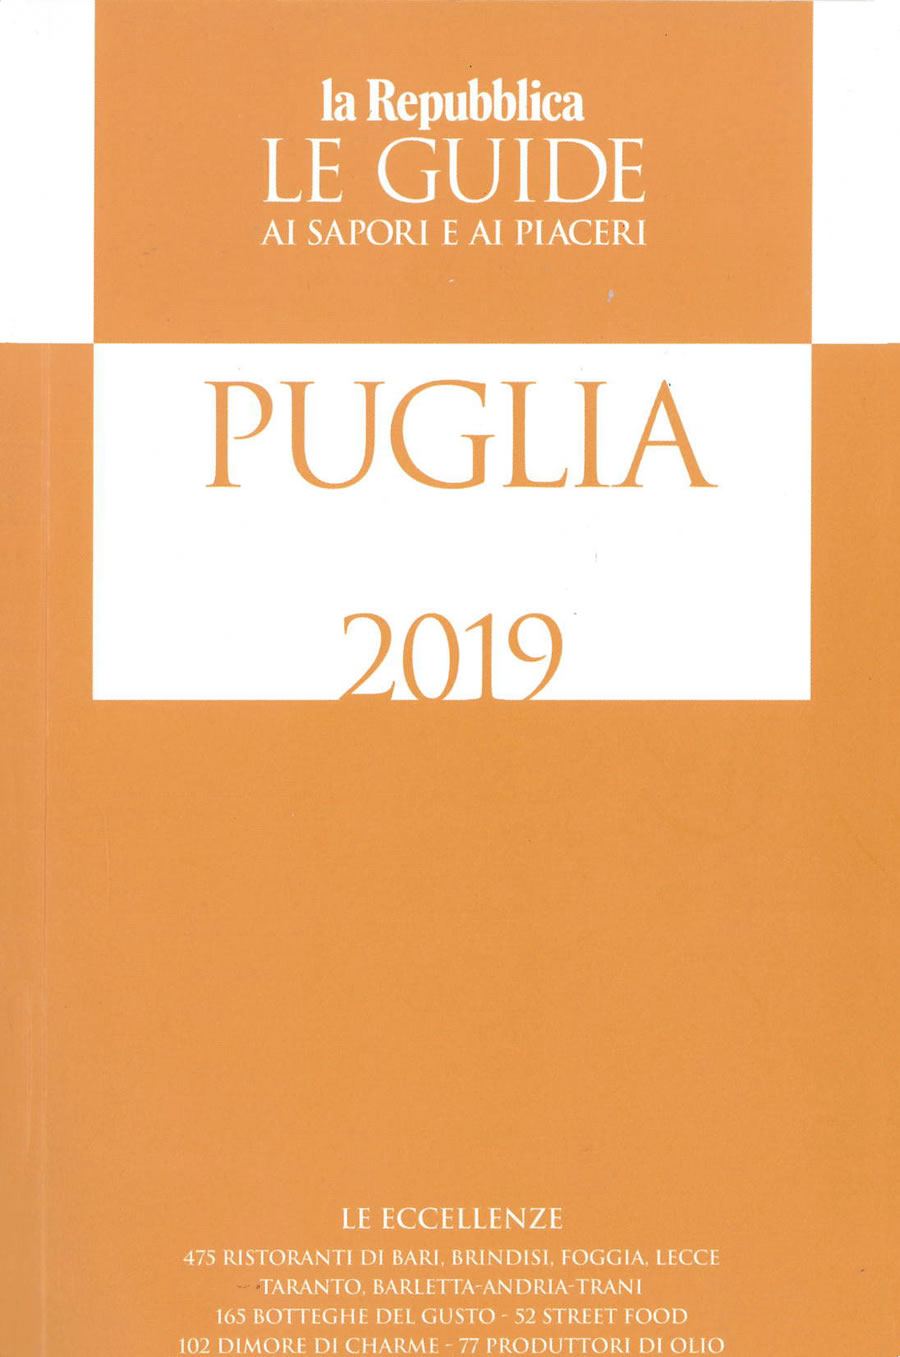 le guide 2019 Repubblica